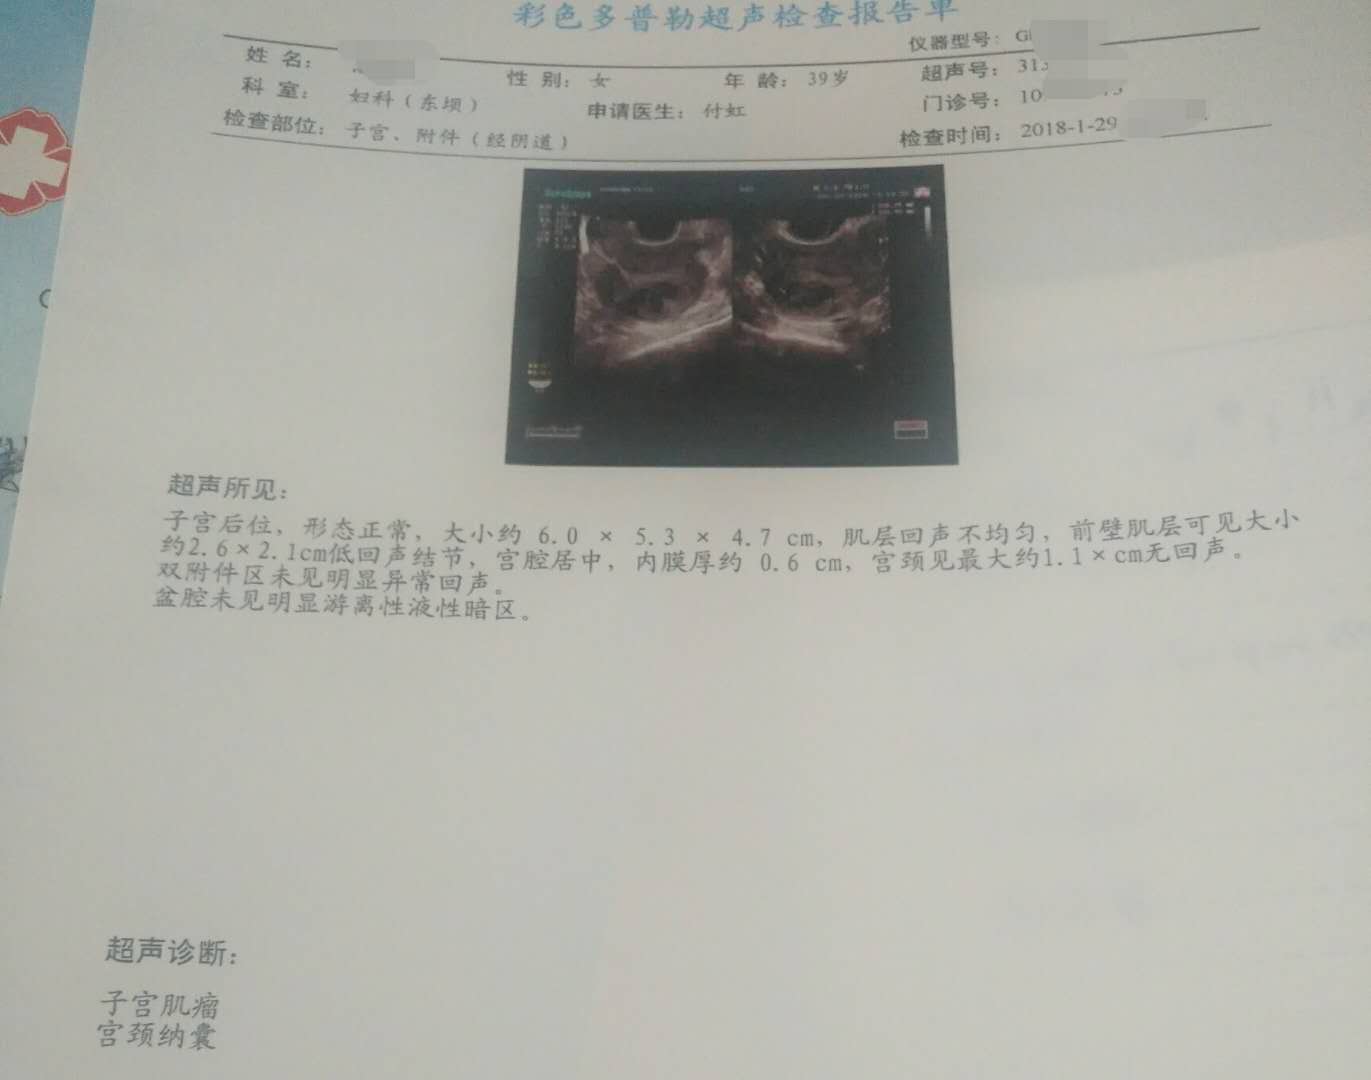 我是2月20号来最后一次例假到现在去医院做了B超检查，结果是 子宫前位，大小6.0x3.7x4.1 - 百度宝宝知道